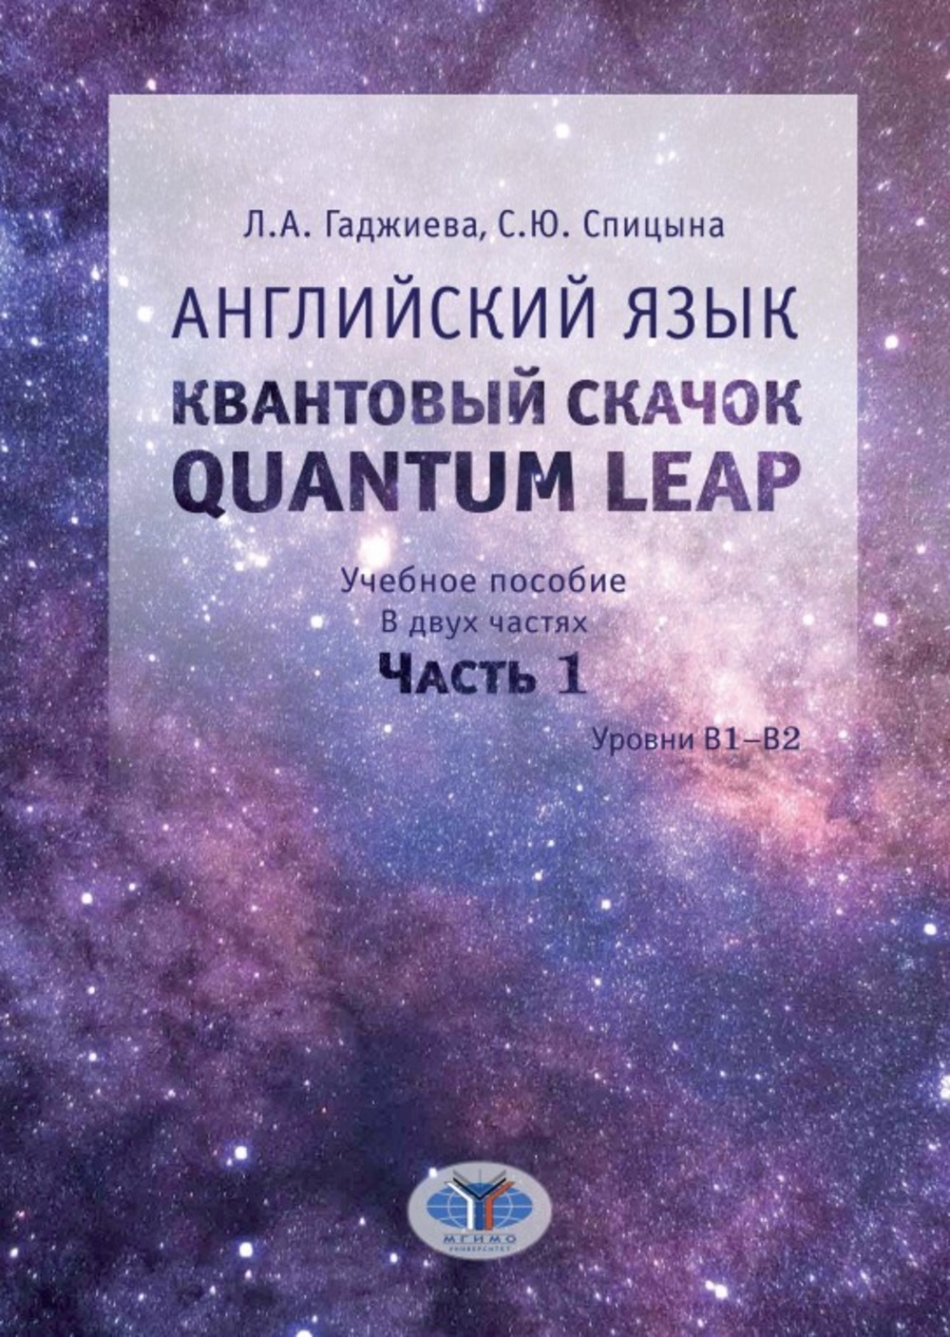  ..,  ..  .  . Quantum leap.  .  12.   .  1 